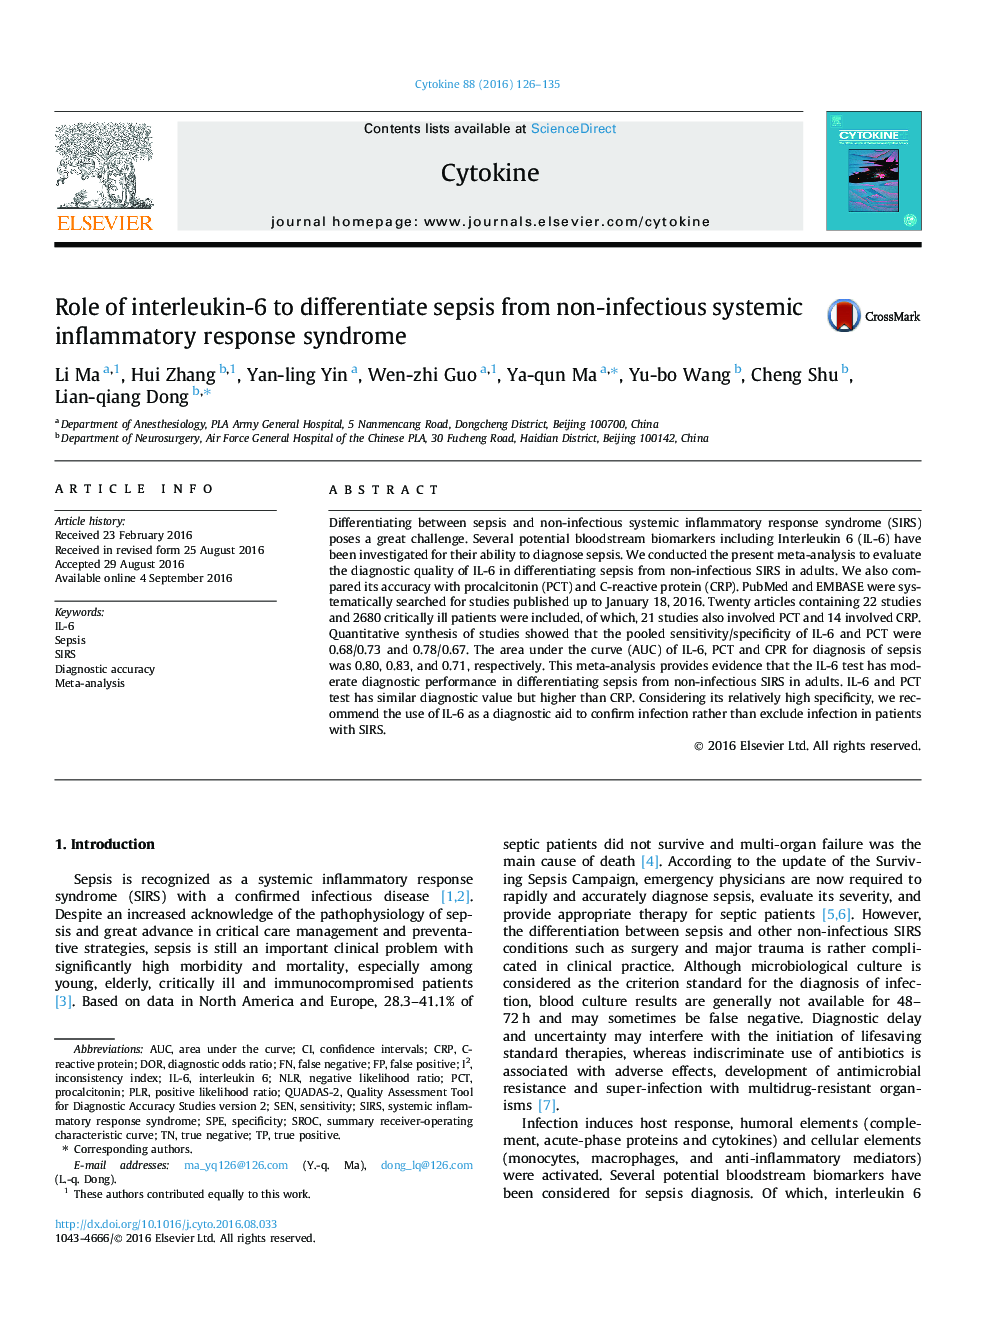 نقش اینترلوکین -6 برای جداسازی سپسیس از سندرم پاسخ التهابی سیستمیک غیر سیستم عصبی 